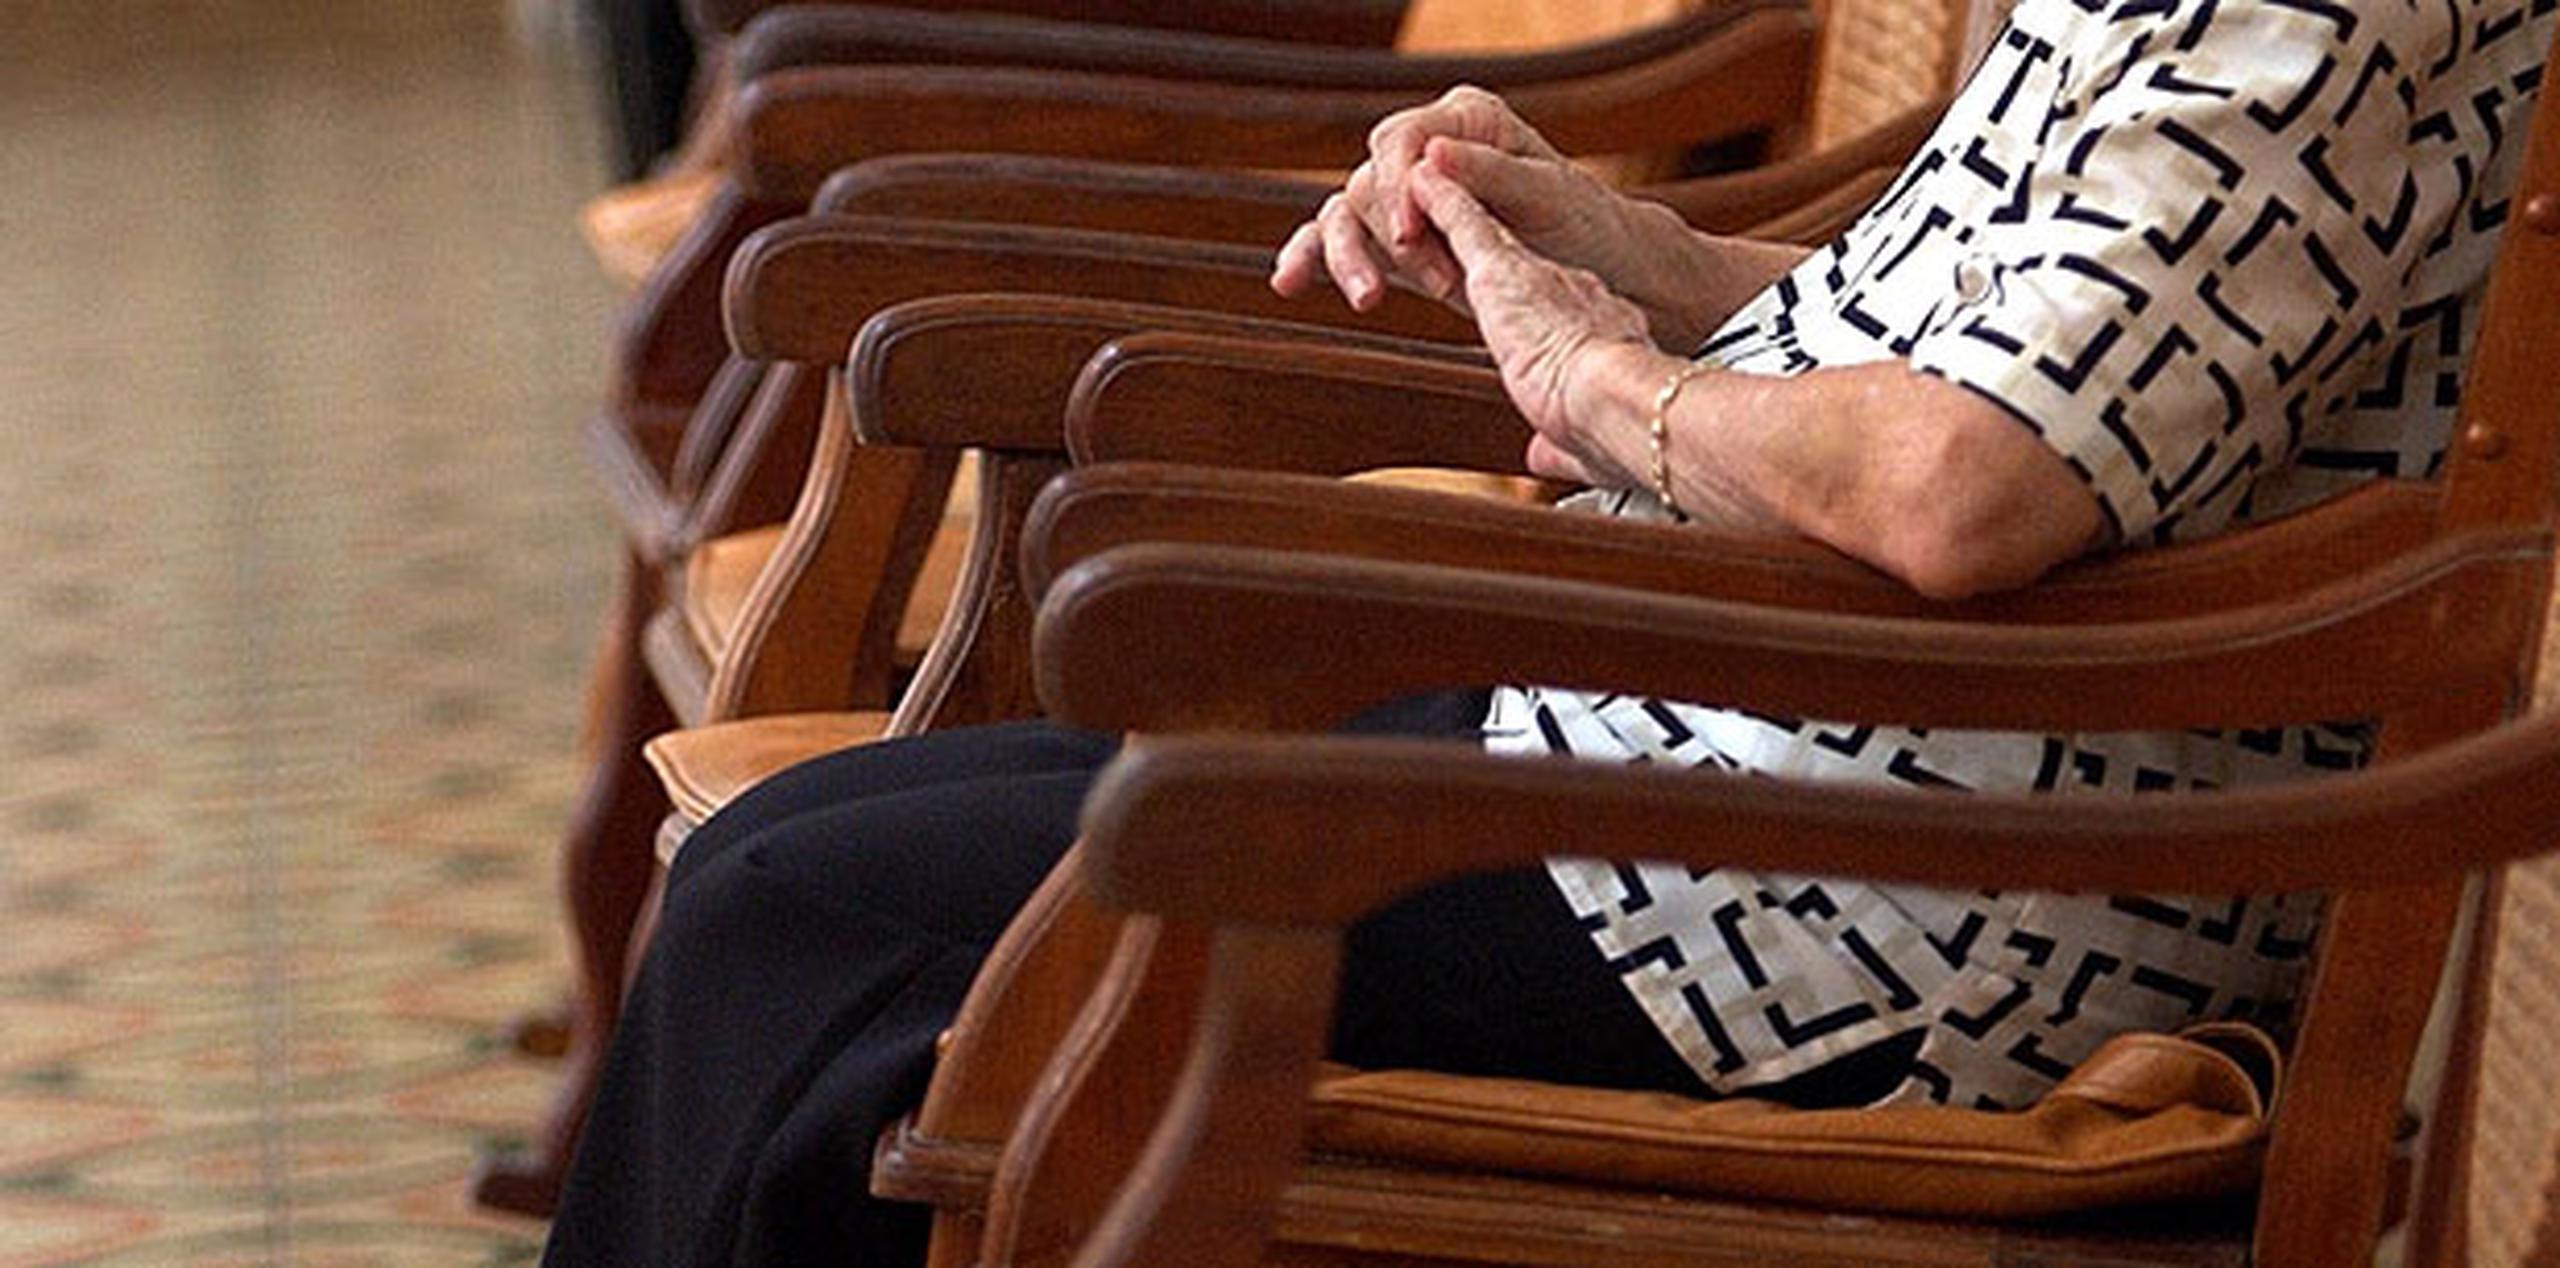 Según sus últimas cifras, más de la mitad de las personas mayores de 75 años en el país, unas 700,000, se sienten solas. (Archivo)